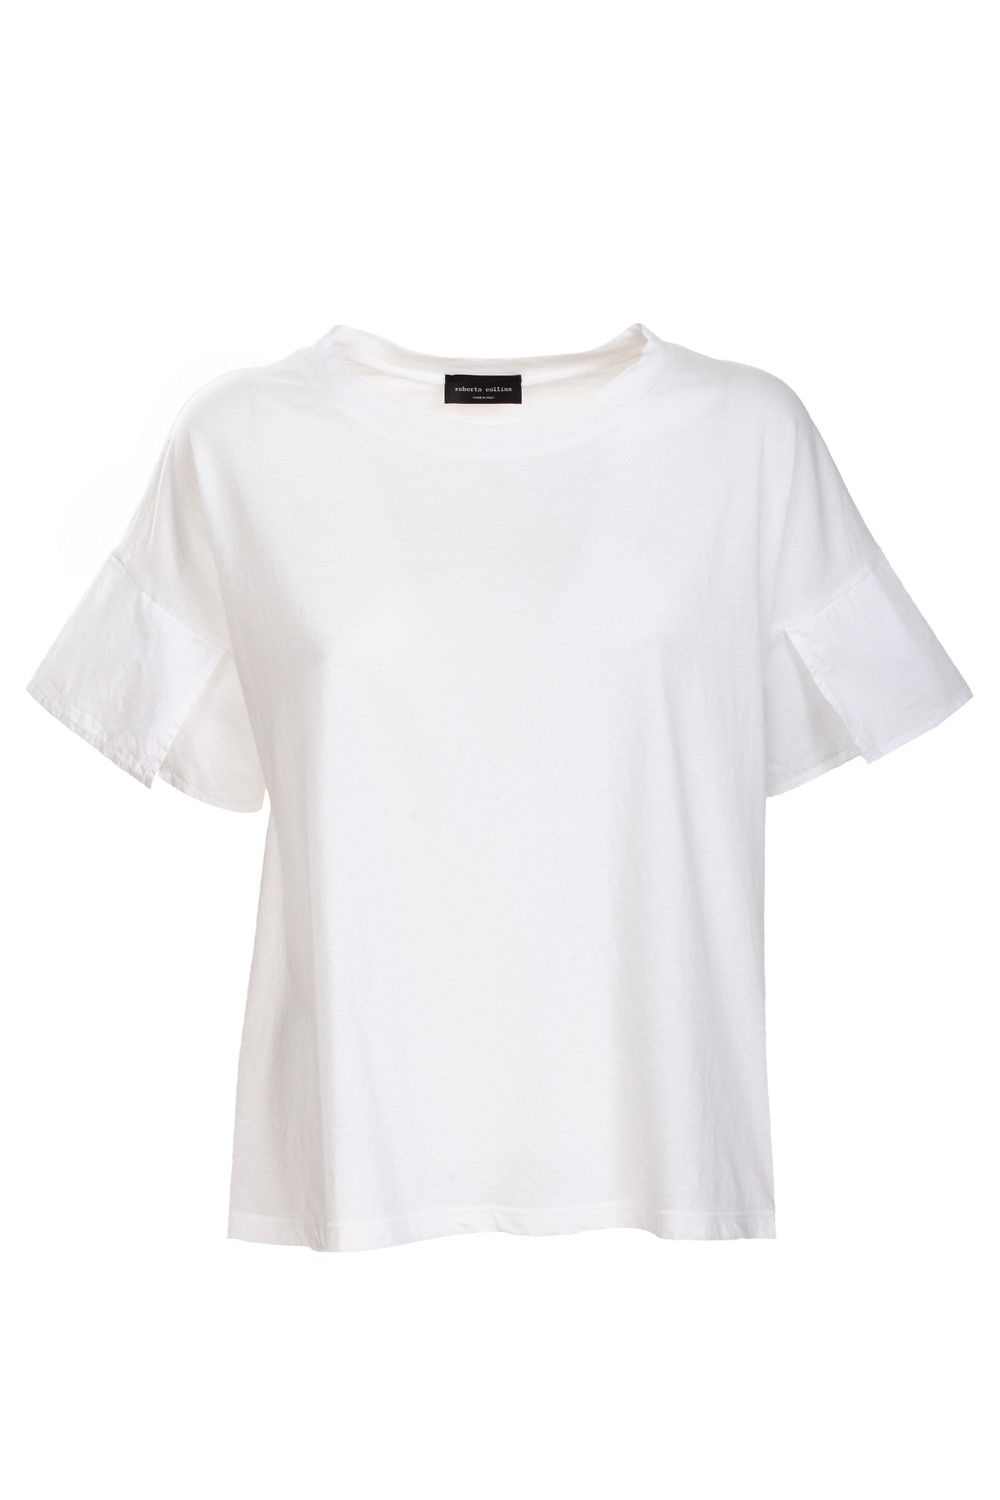 shop ROBERTO COLLINA Saldi T-shirt: Roberto Collina T-shirt in cotone, bianco.
Maniche corte con apertura.
Scollo rotondo.
Regular fit.
Composizione: 100% cotone.
Made in Italy.. E52121-E5201 number 655572